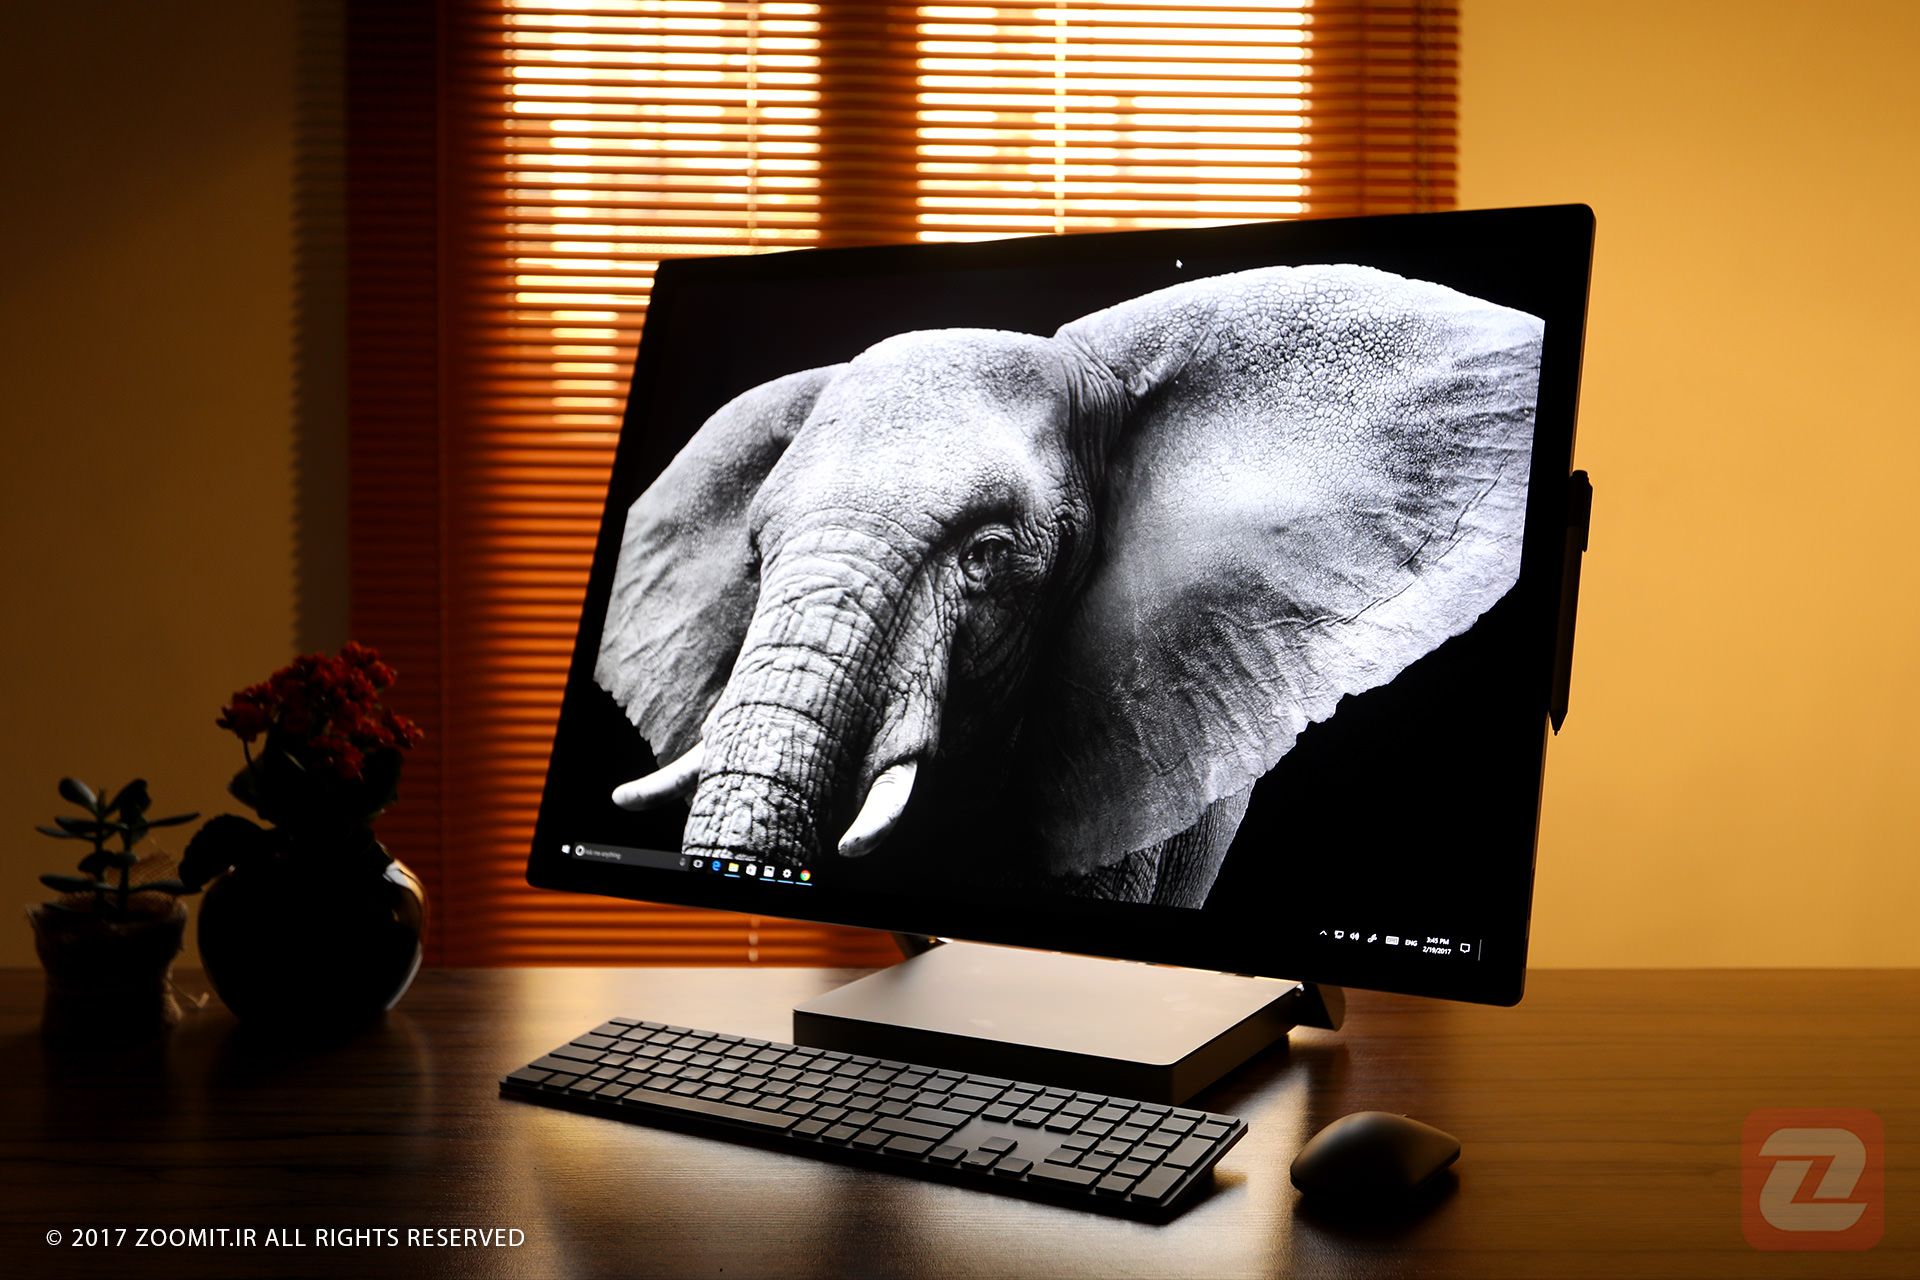 مایکروسافت سرفیس استودیو / Microsoft Surface Studio